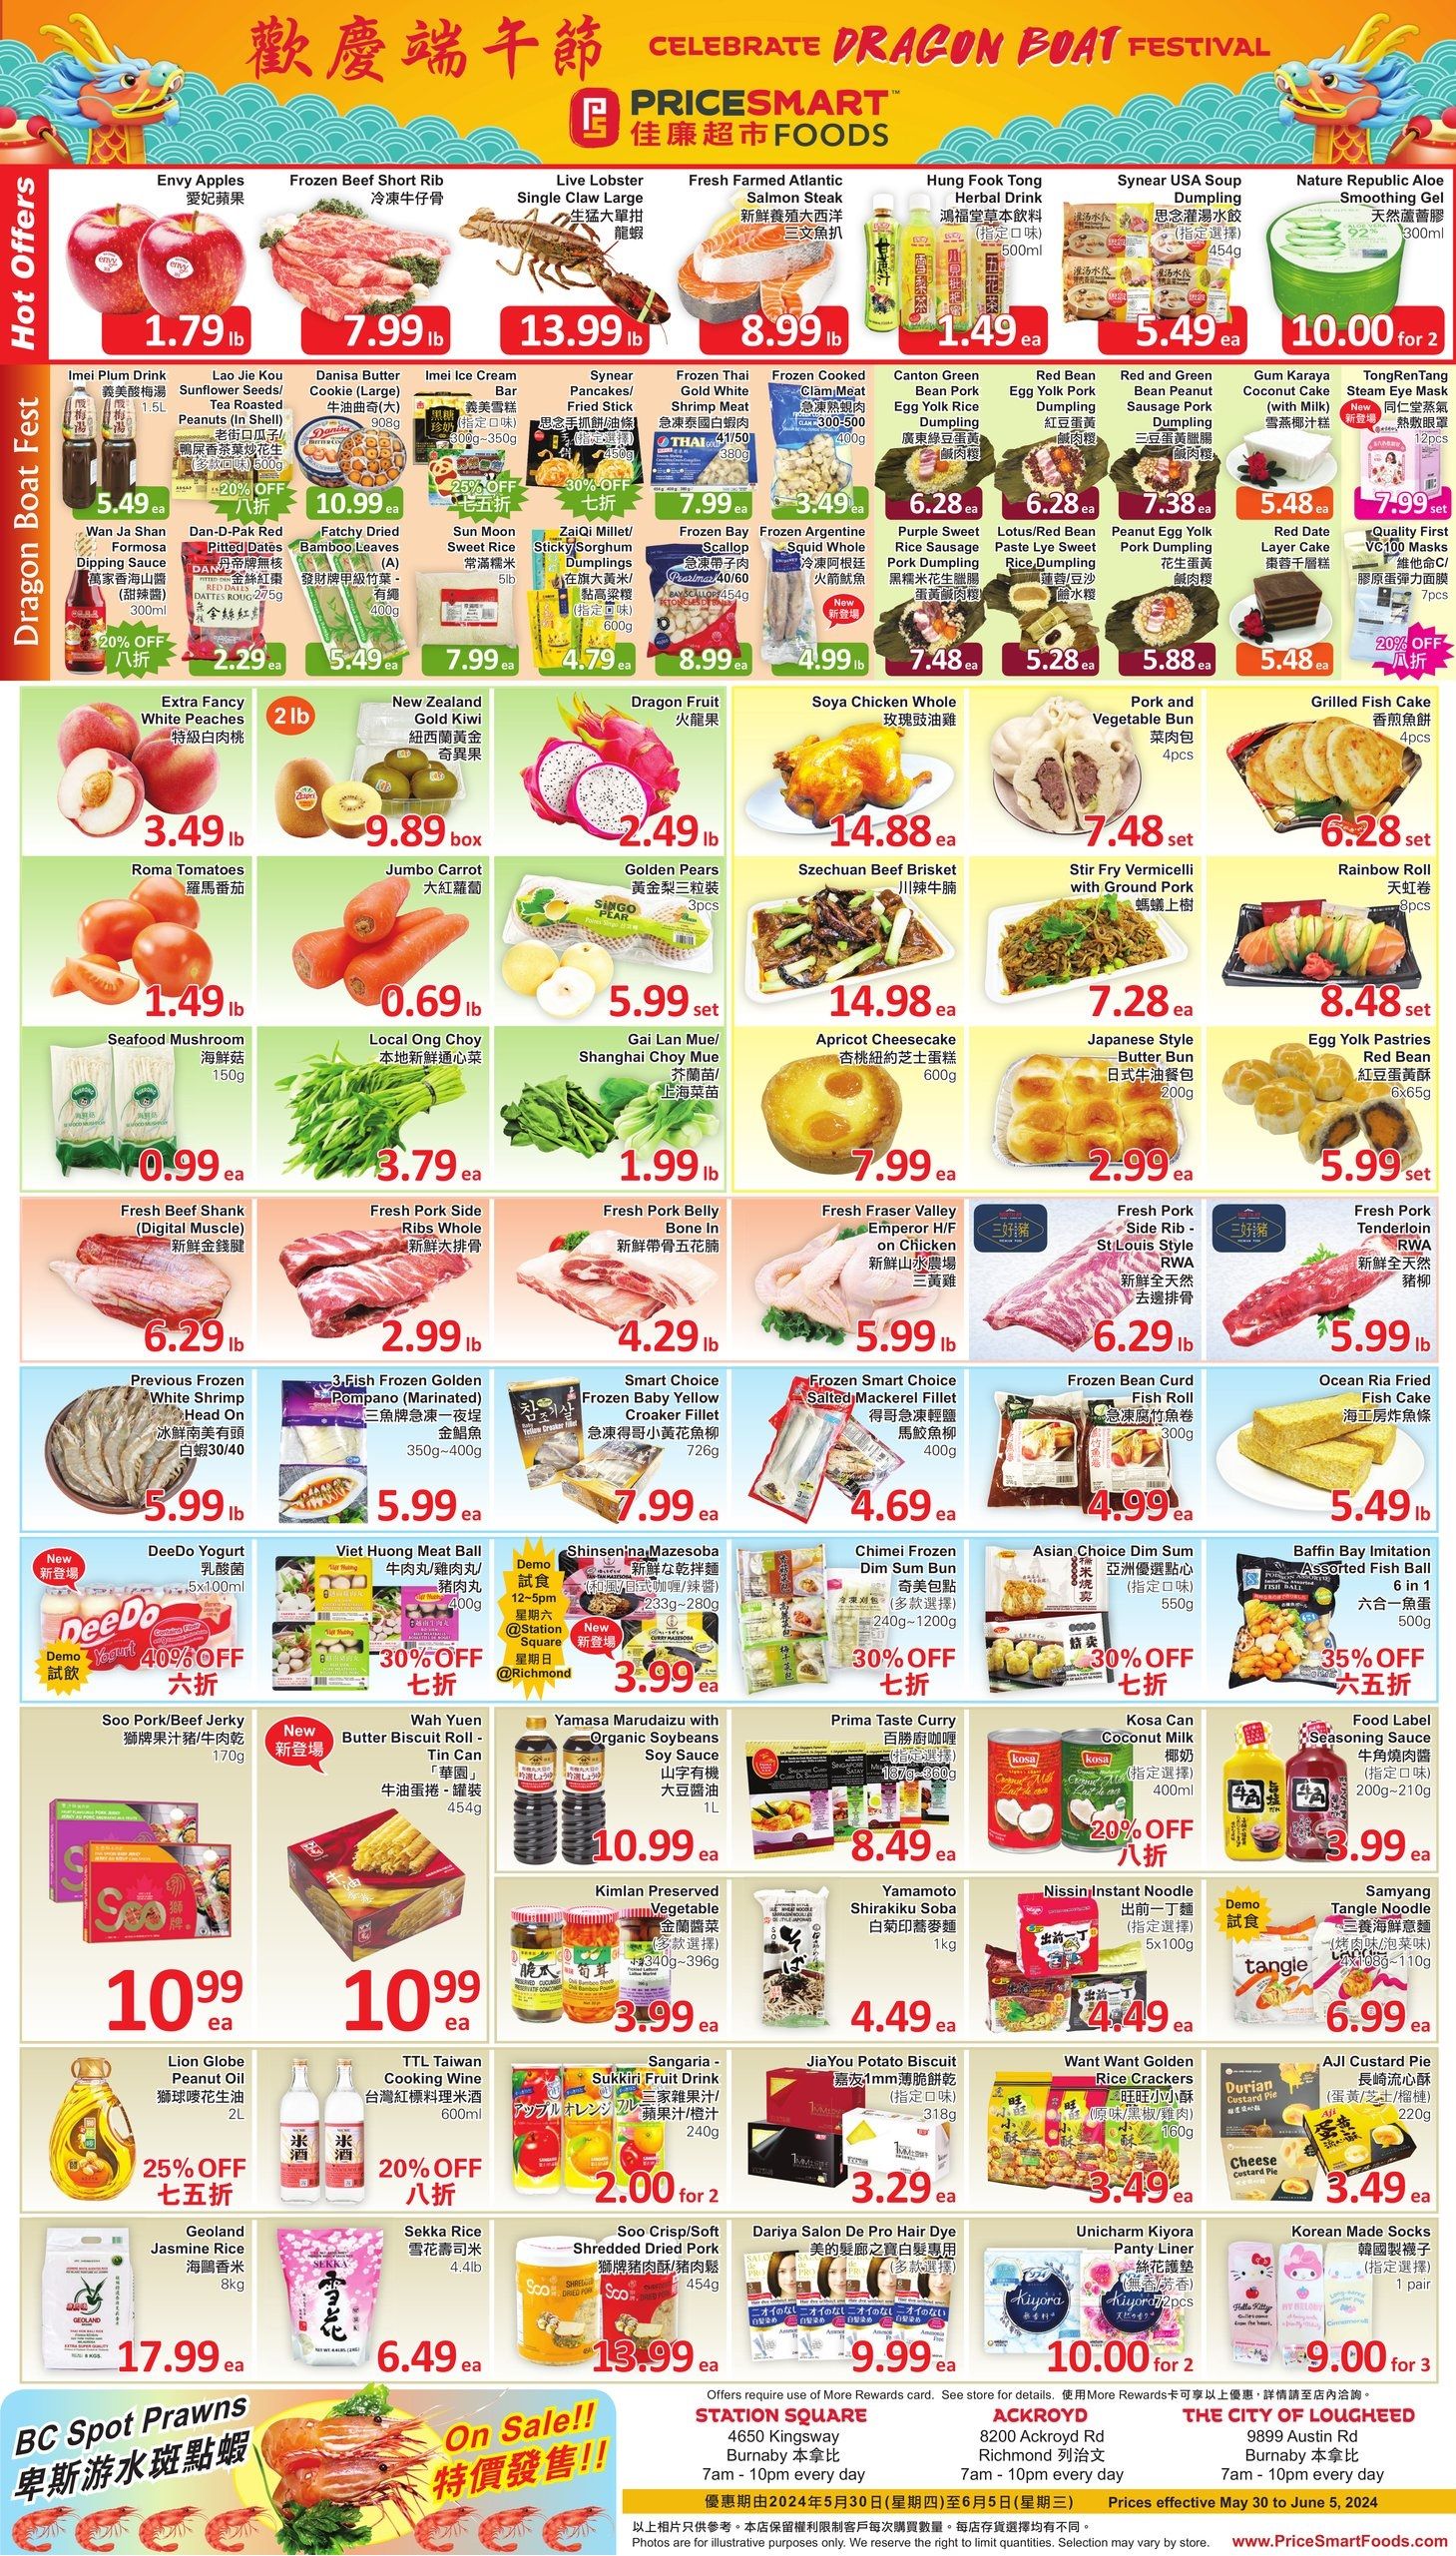 PriceSmart Foods - Weekly Flyer Specials